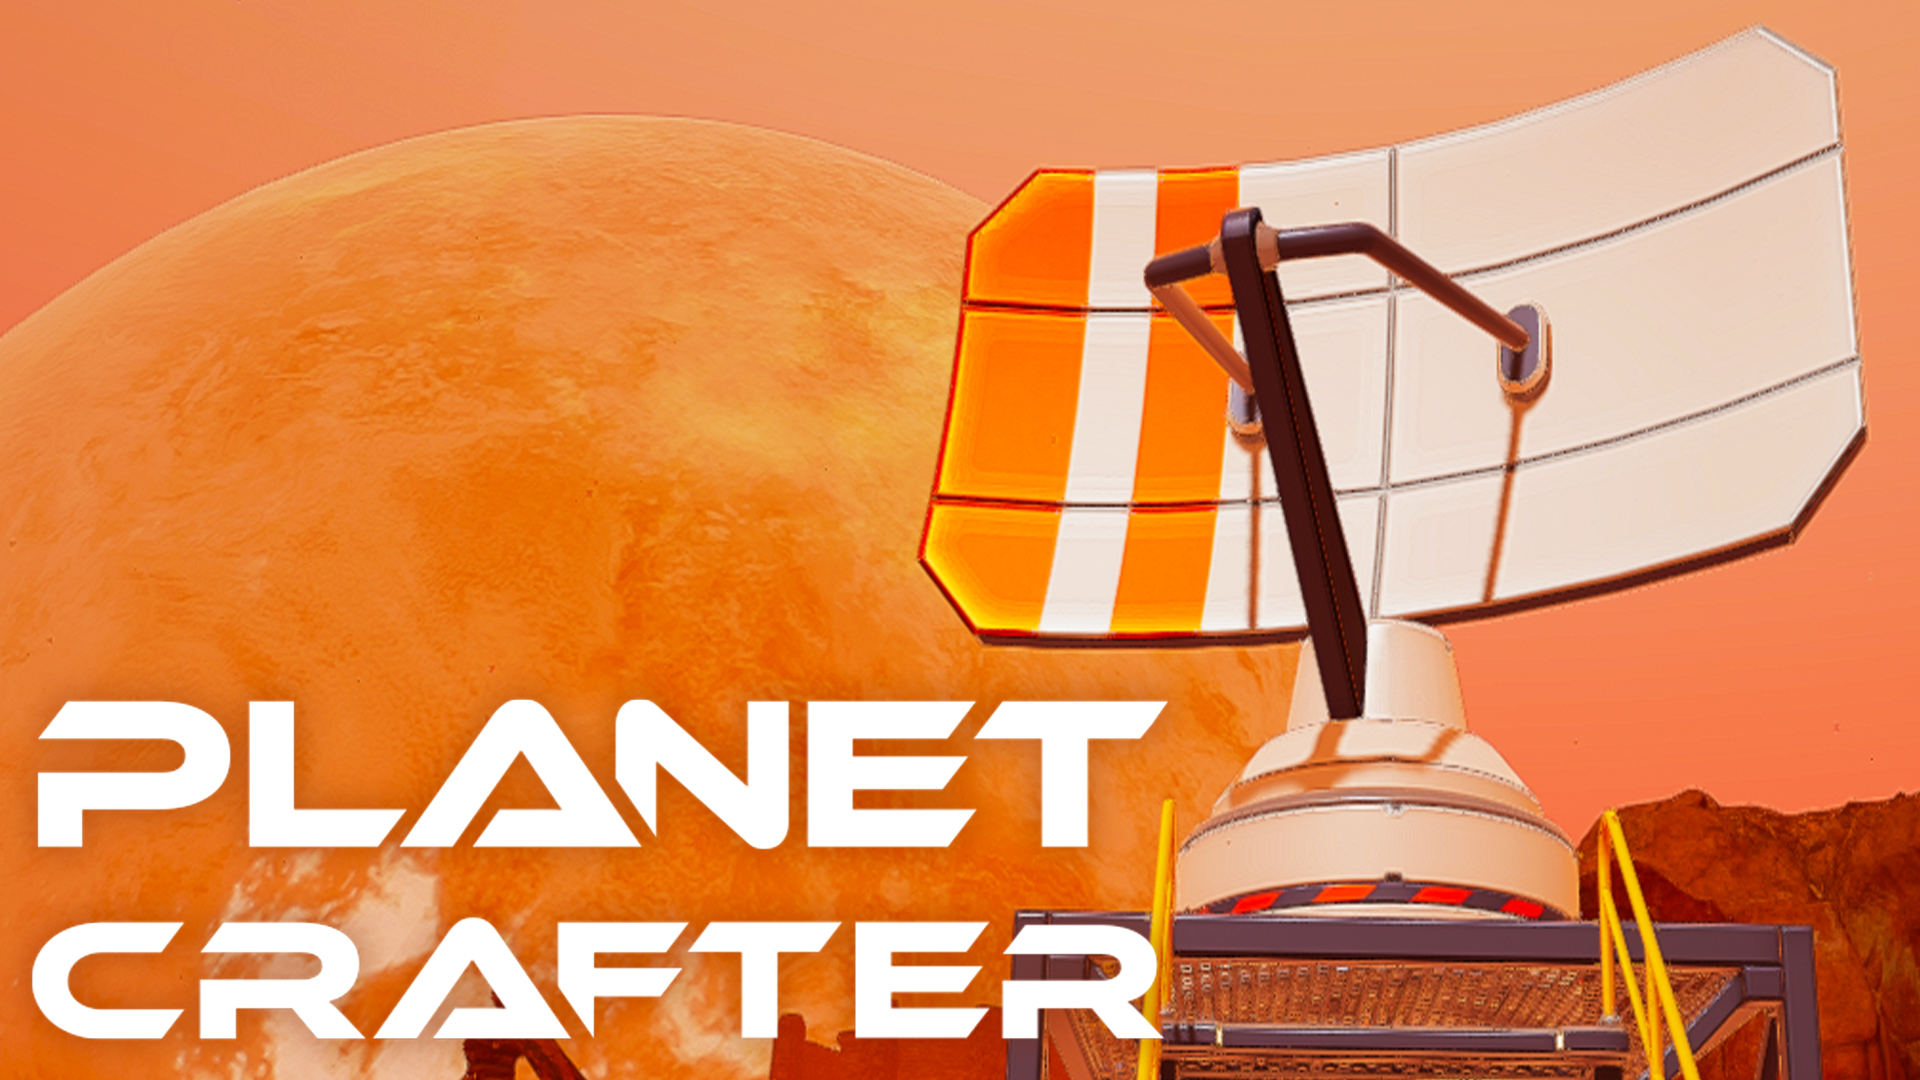 МЕТЕОРИТНЫЙ ДОЖДЬ ▣ The Planet Crafter: Prologue #3